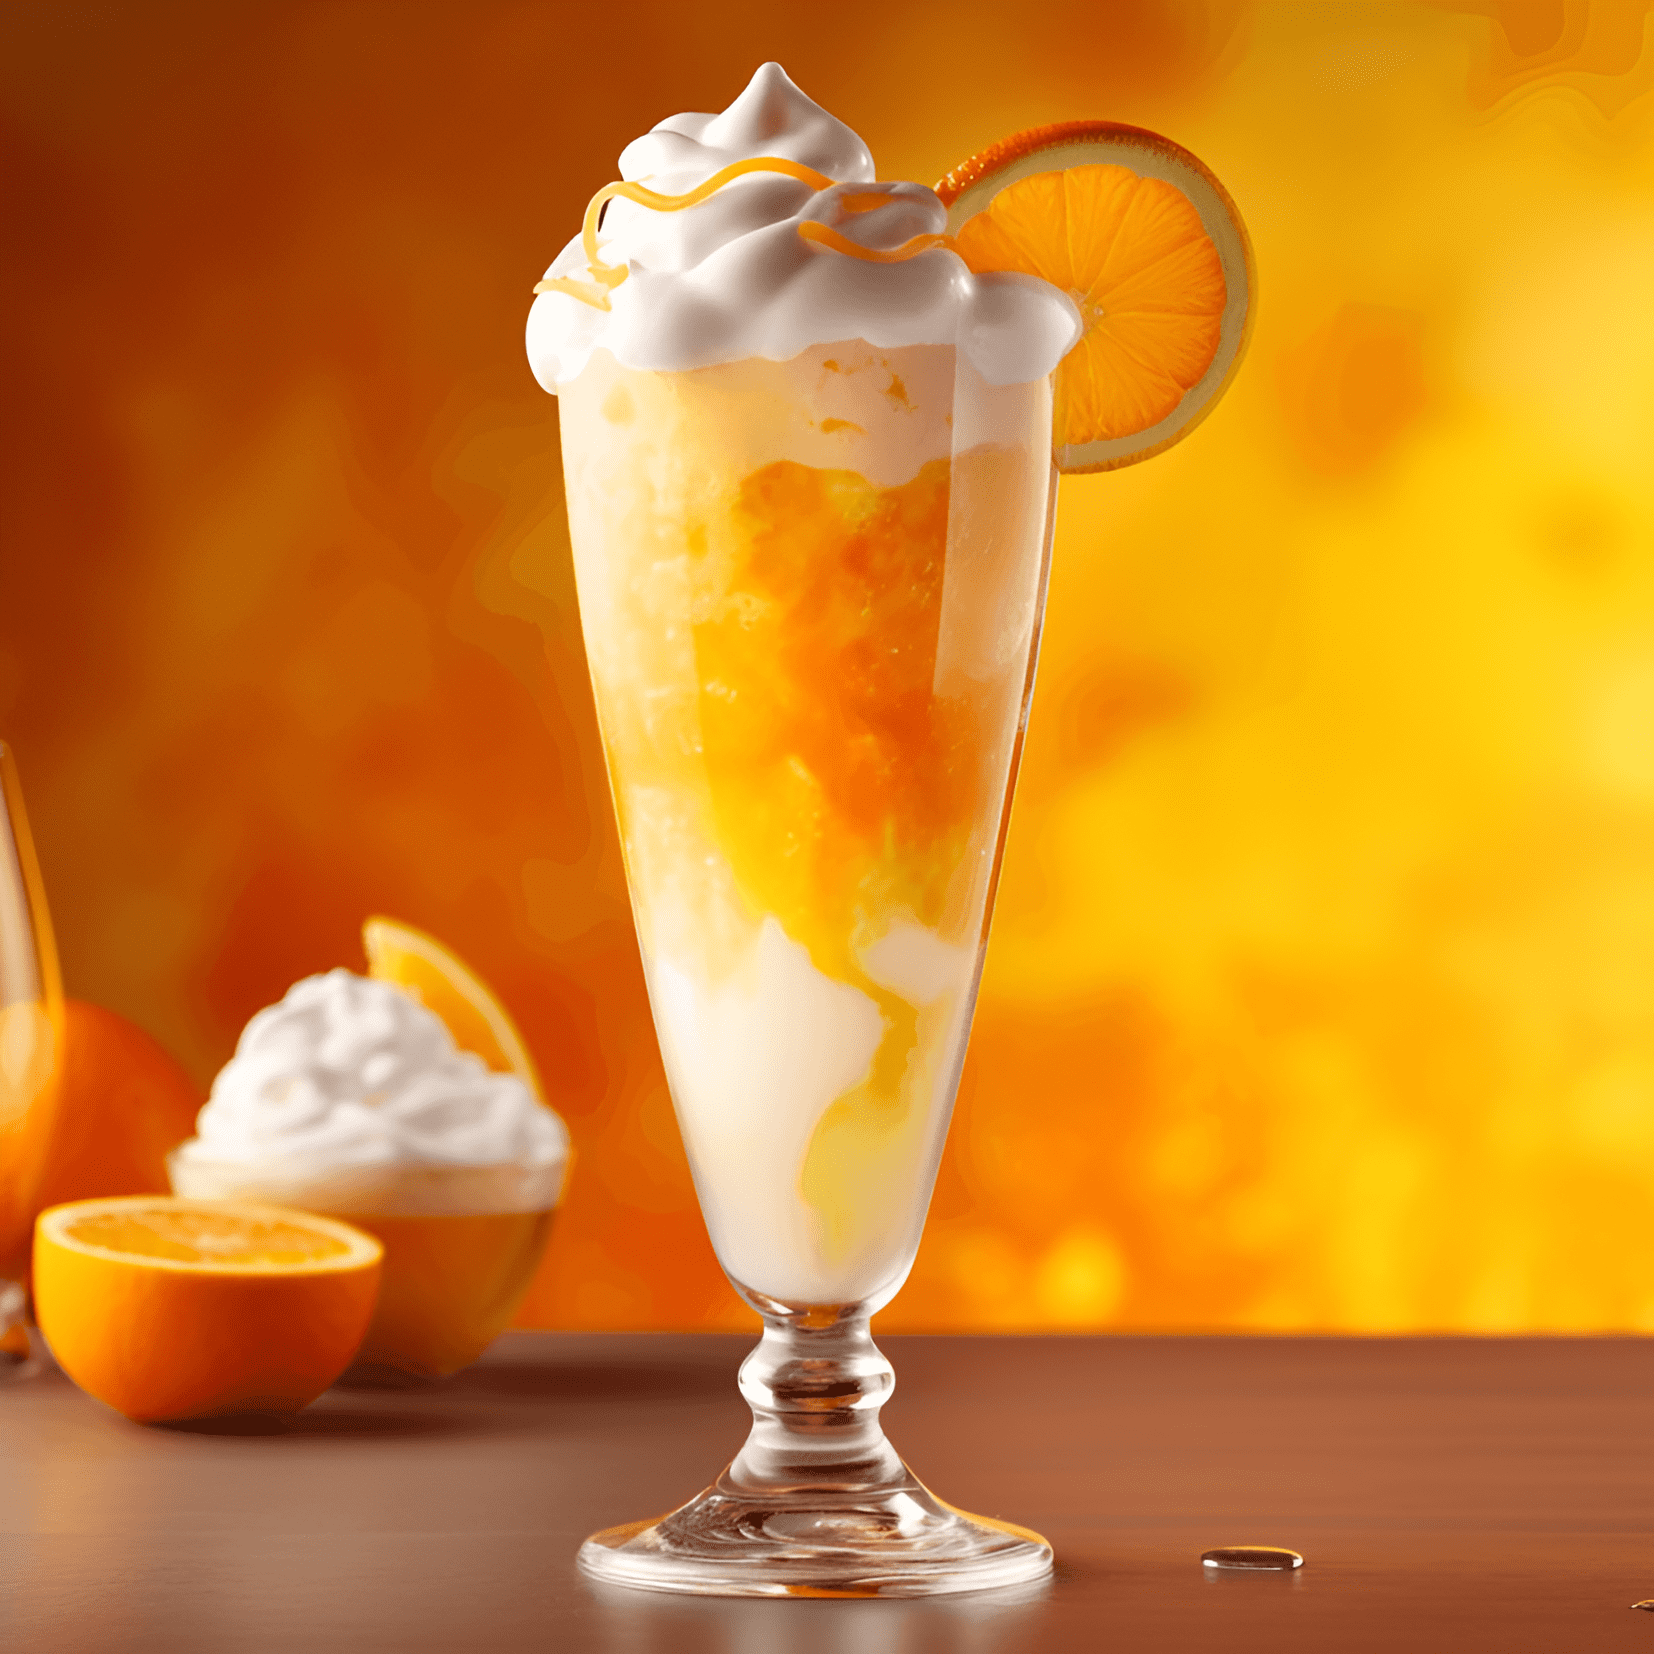 Dreamsicle Cóctel Receta - El cóctel Dreamsicle es una bebida dulce, cremosa y refrescante con un toque de acidez de la naranja. Está bien equilibrado, con una textura suave y aterciopelada que deja un agradable sabor de boca.